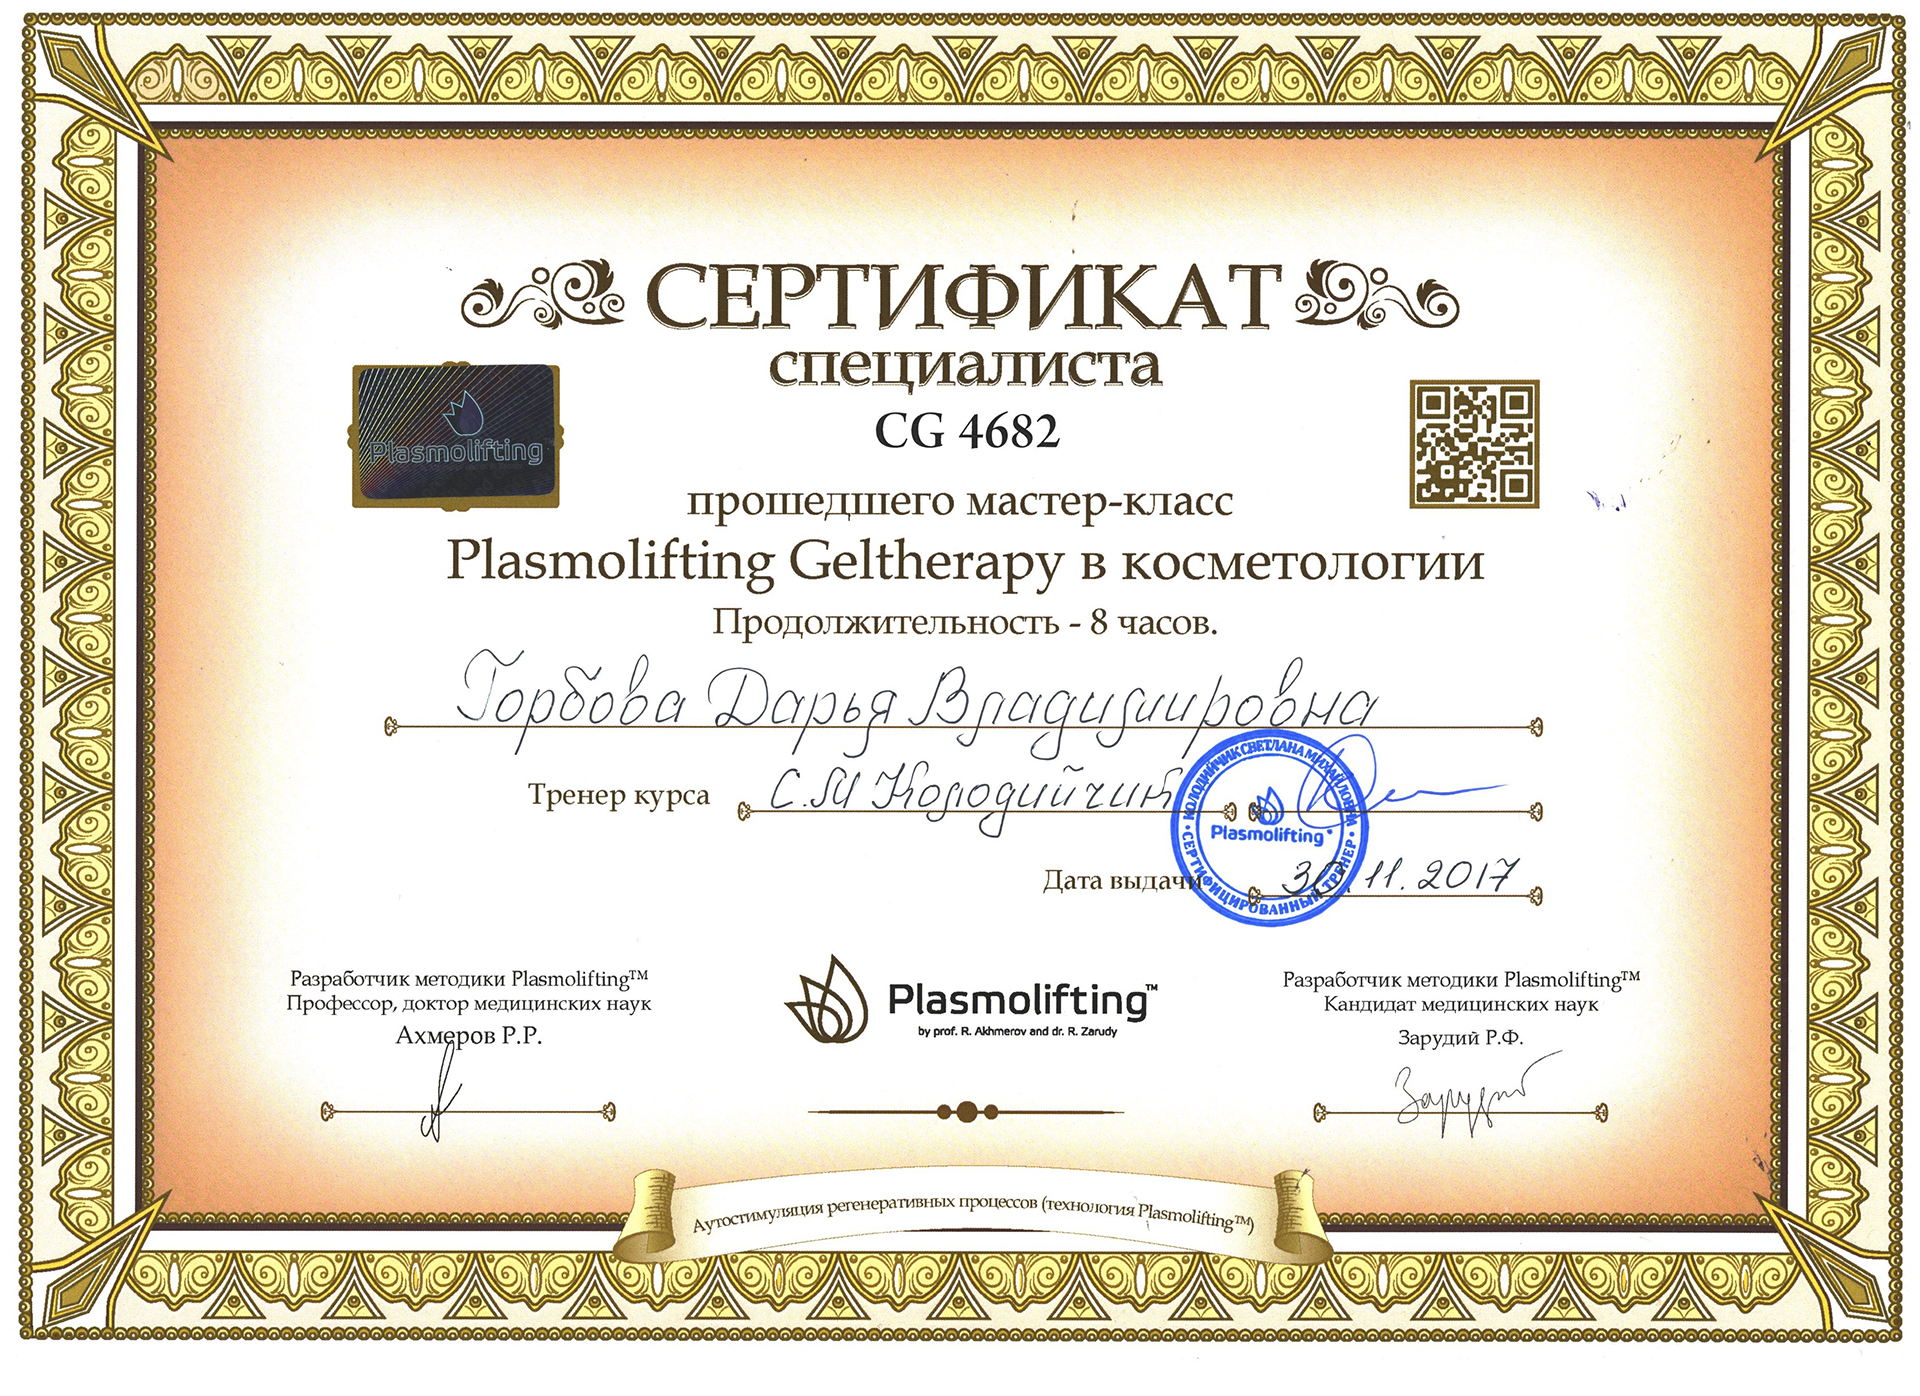 Сертификат — Мастер-класс «Plasmolifting Geltherapy в косметологии». Горбова Дарья Владимировна